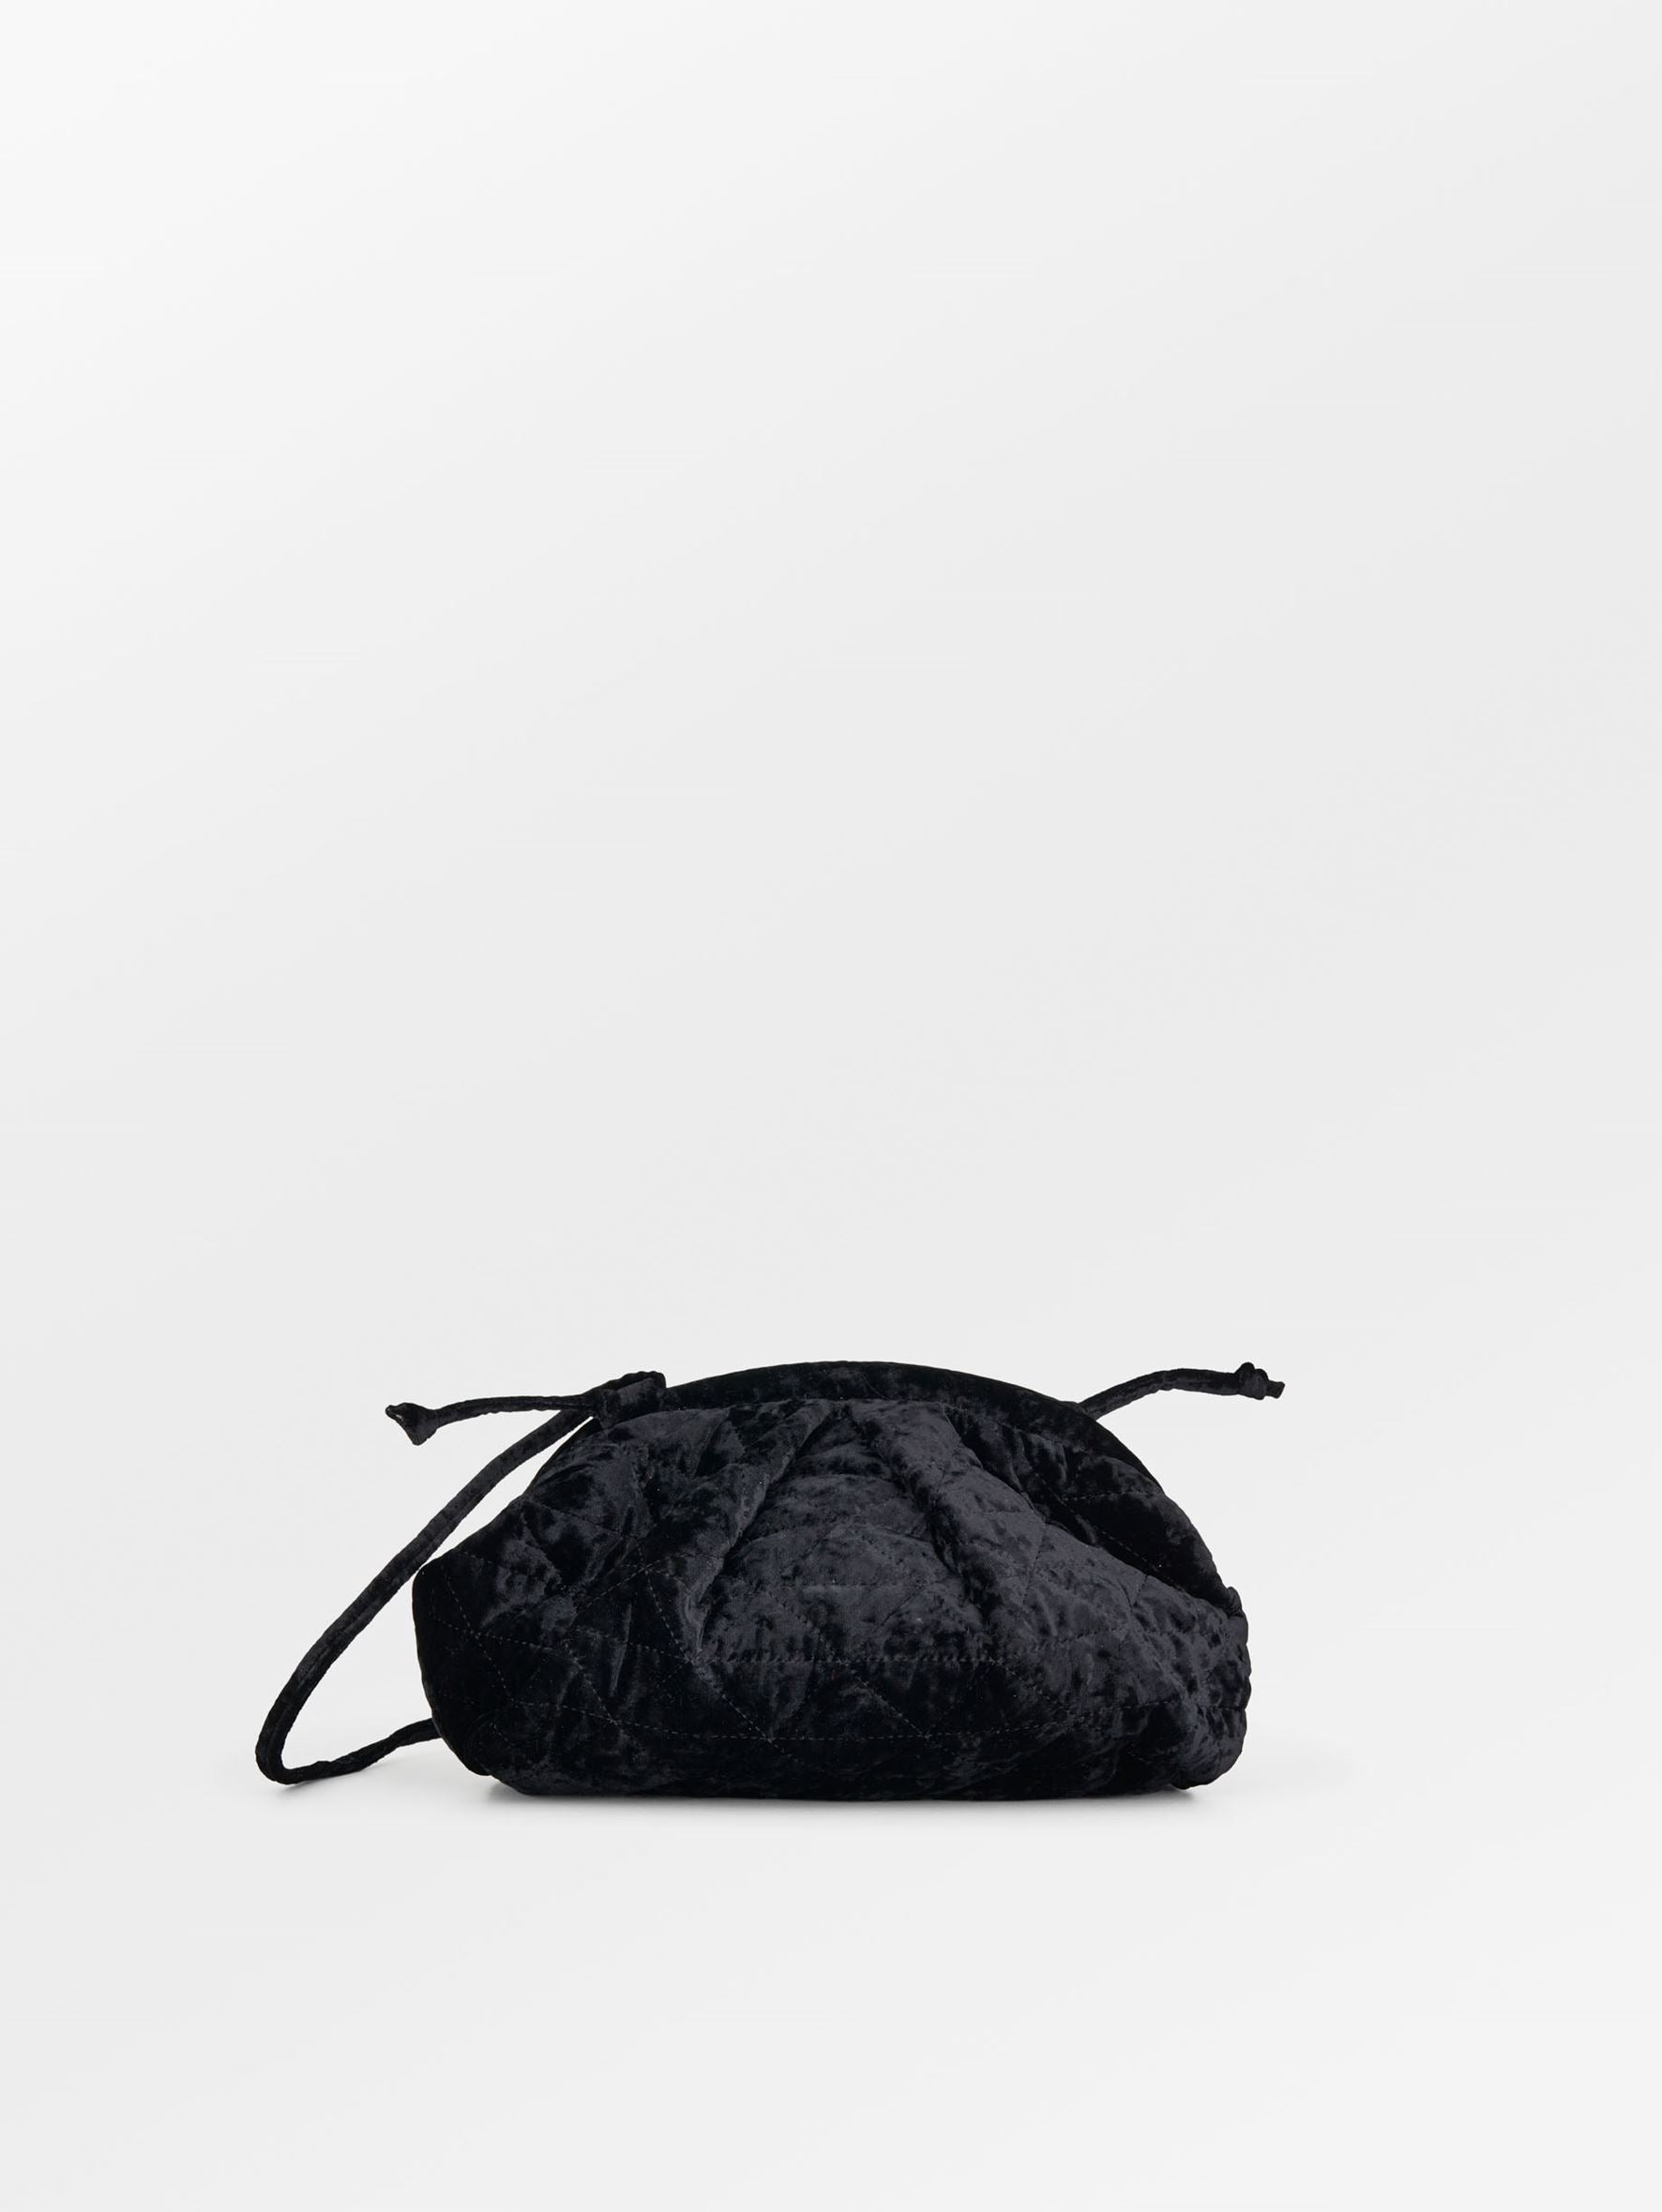 Becksöndergaard, Velour Bonita Bag - Black, bags, archive, archive, sale, sale, bags